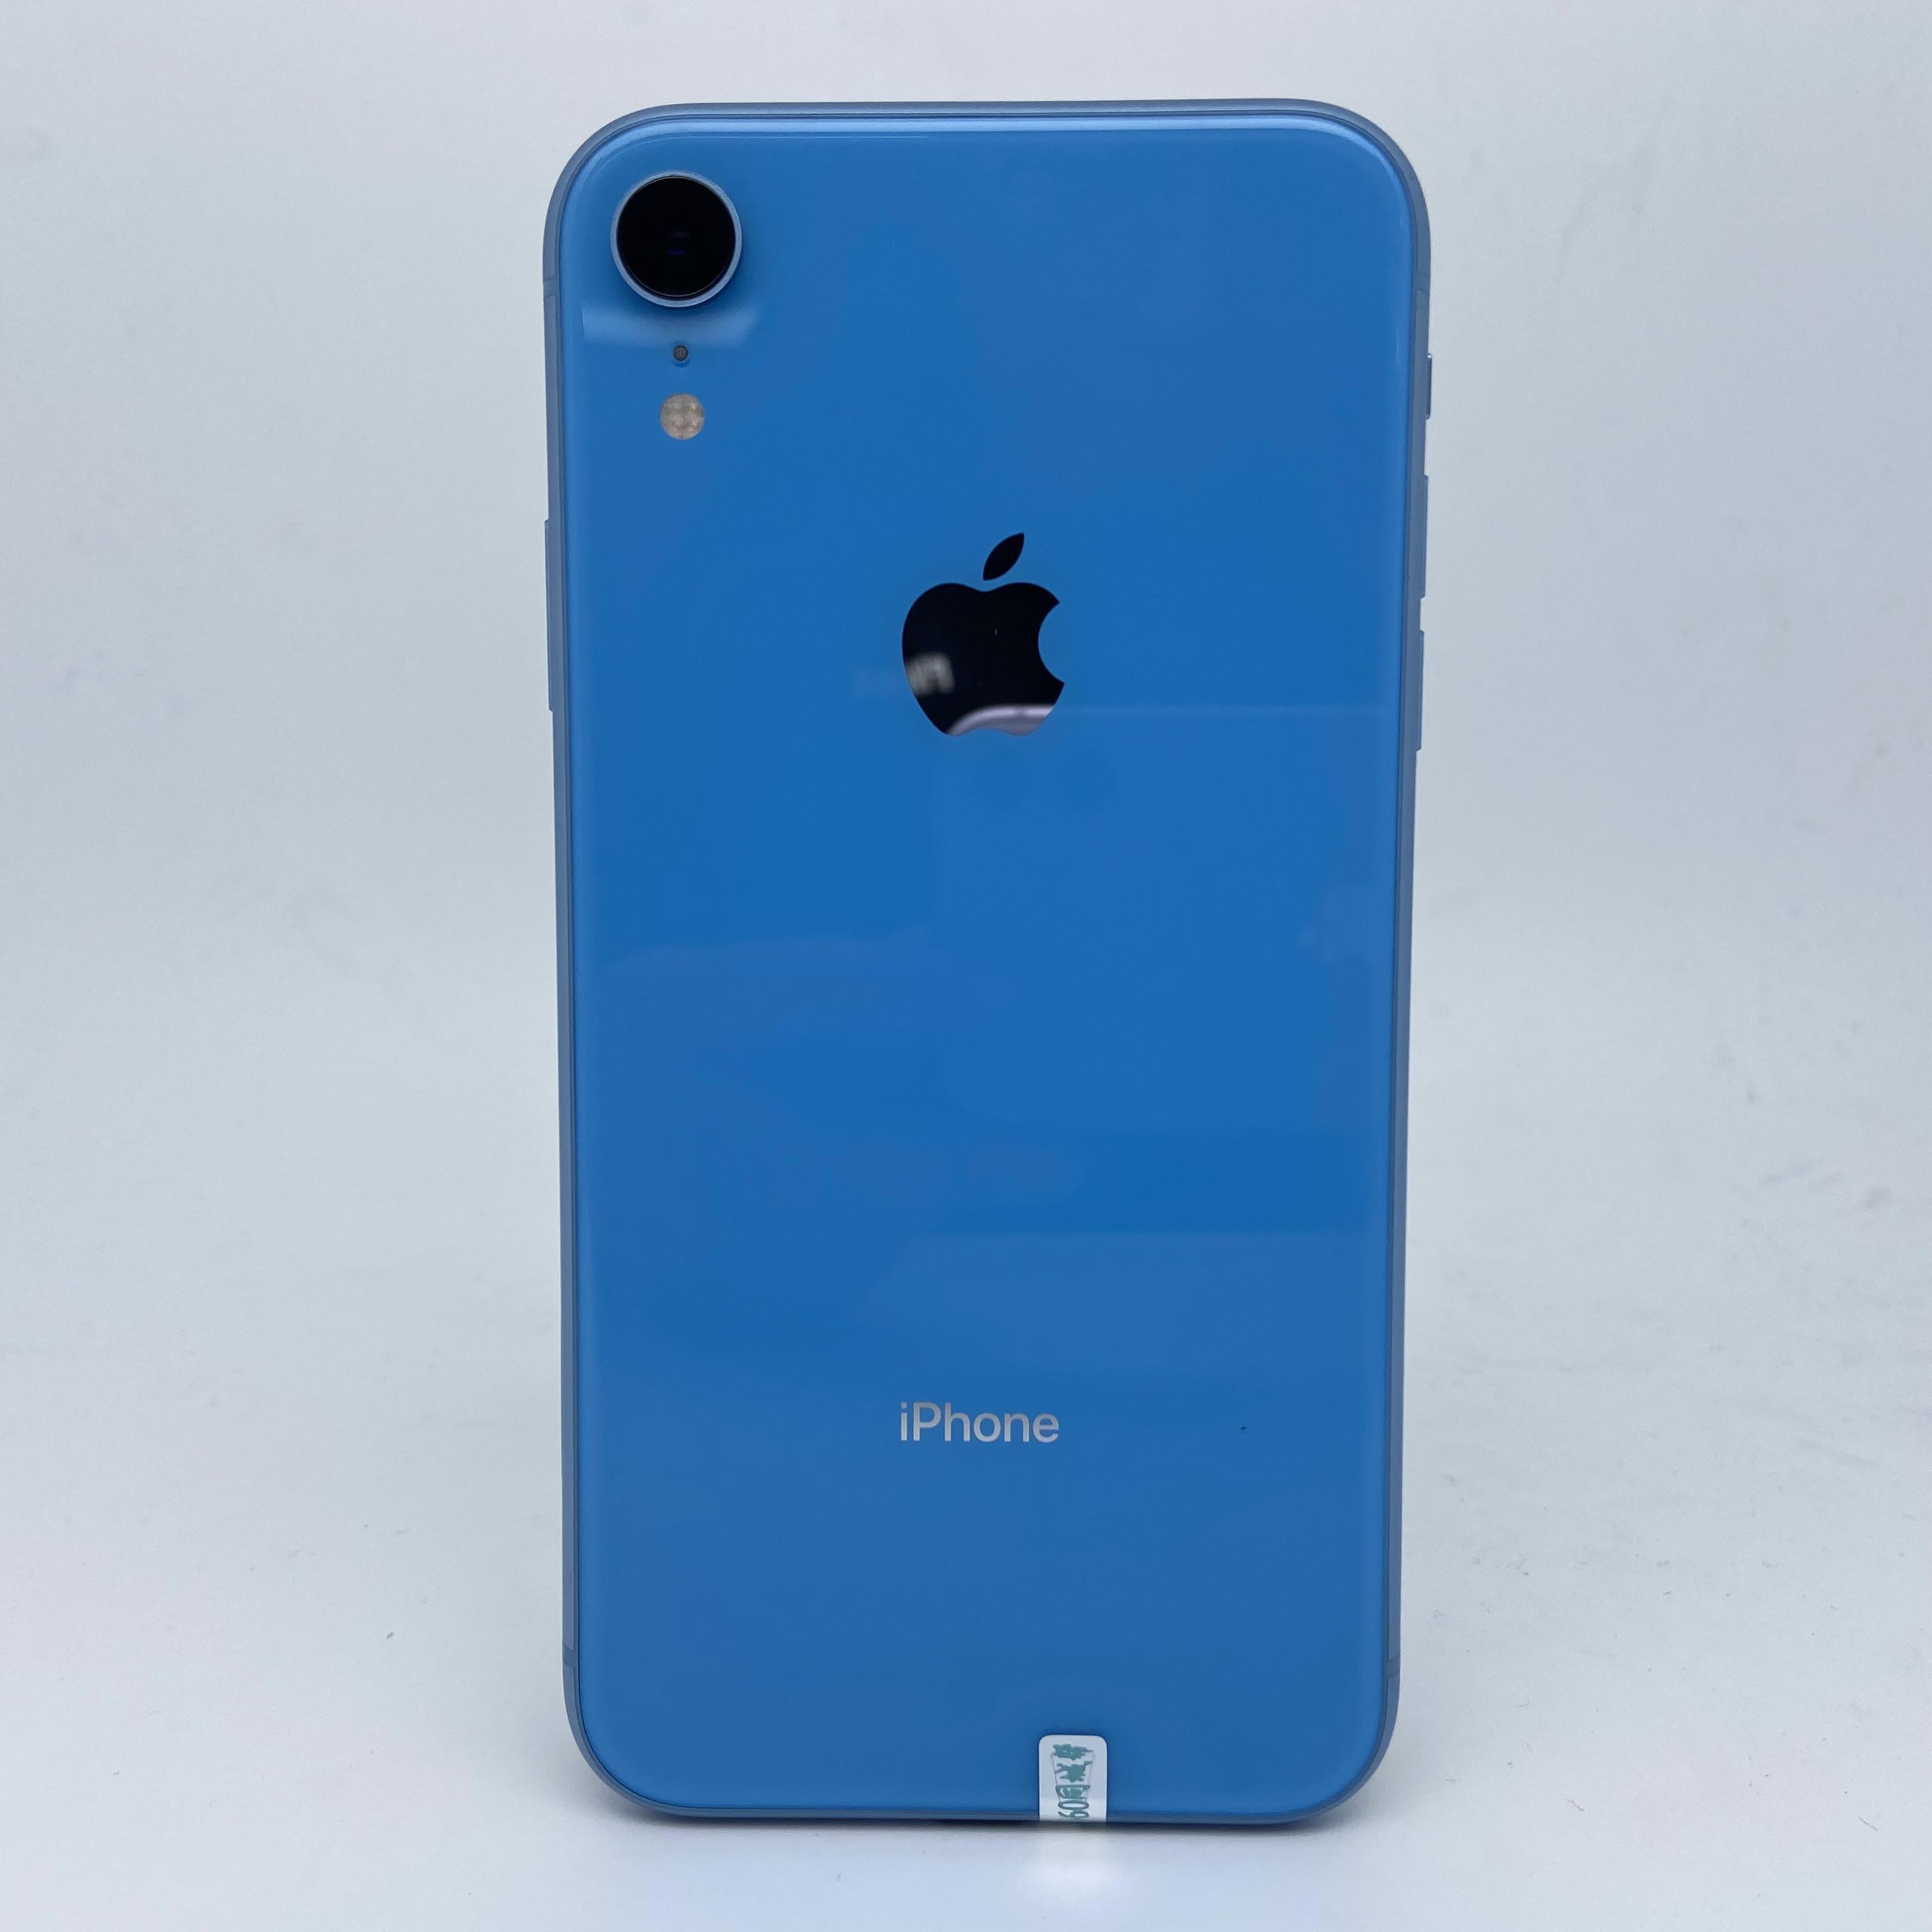 苹果【iPhone XR】4G全网通 蓝色 128G 国行 95新 